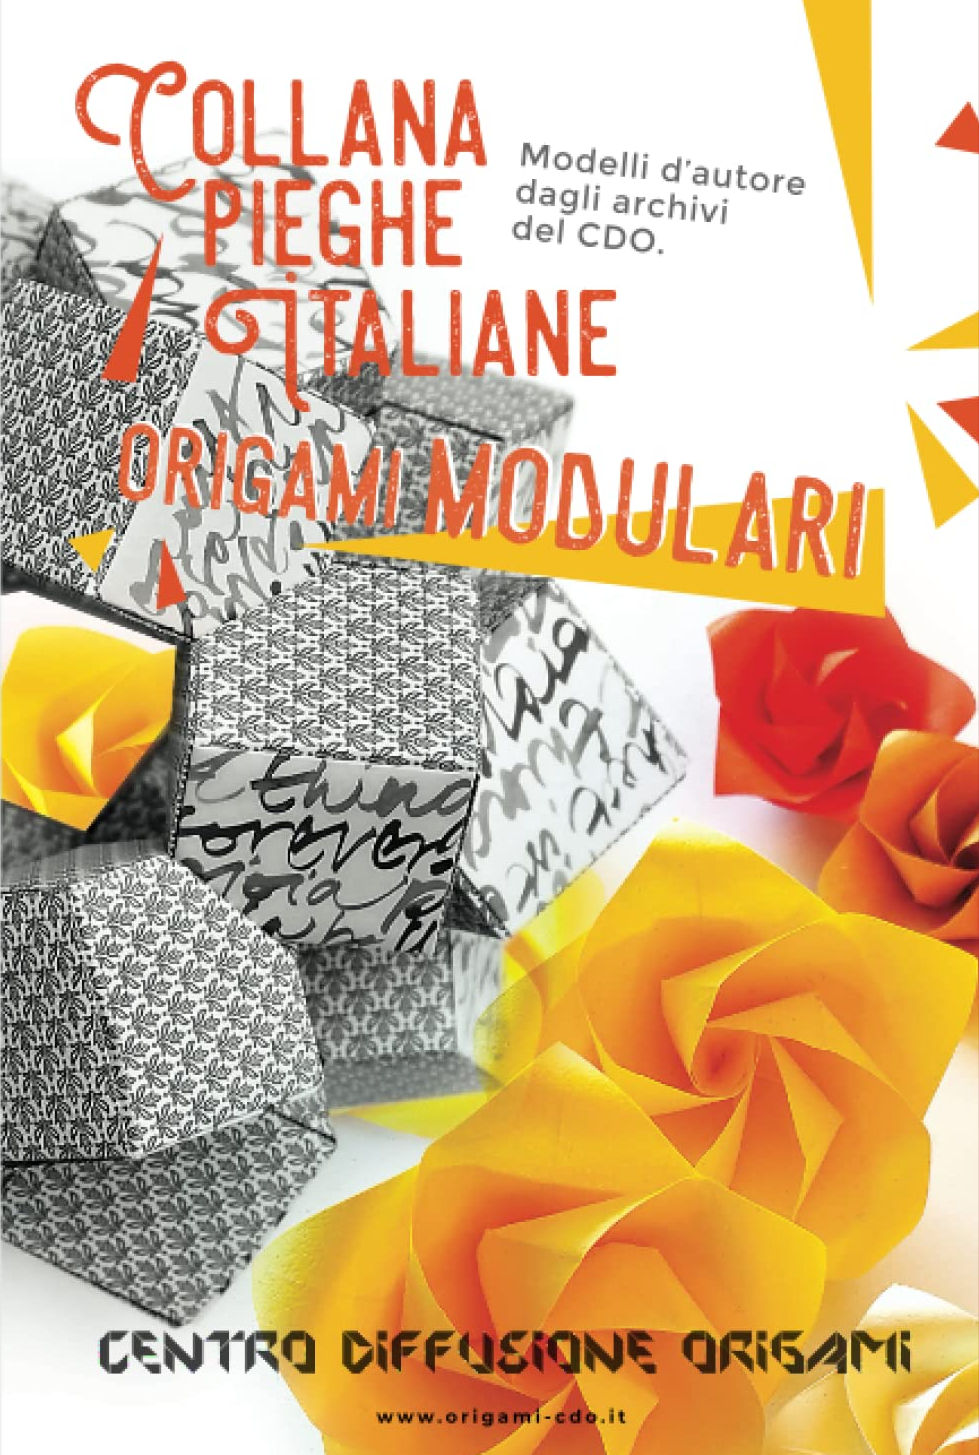 Collana pieghe Italiane - origami MODULARI : page 30.